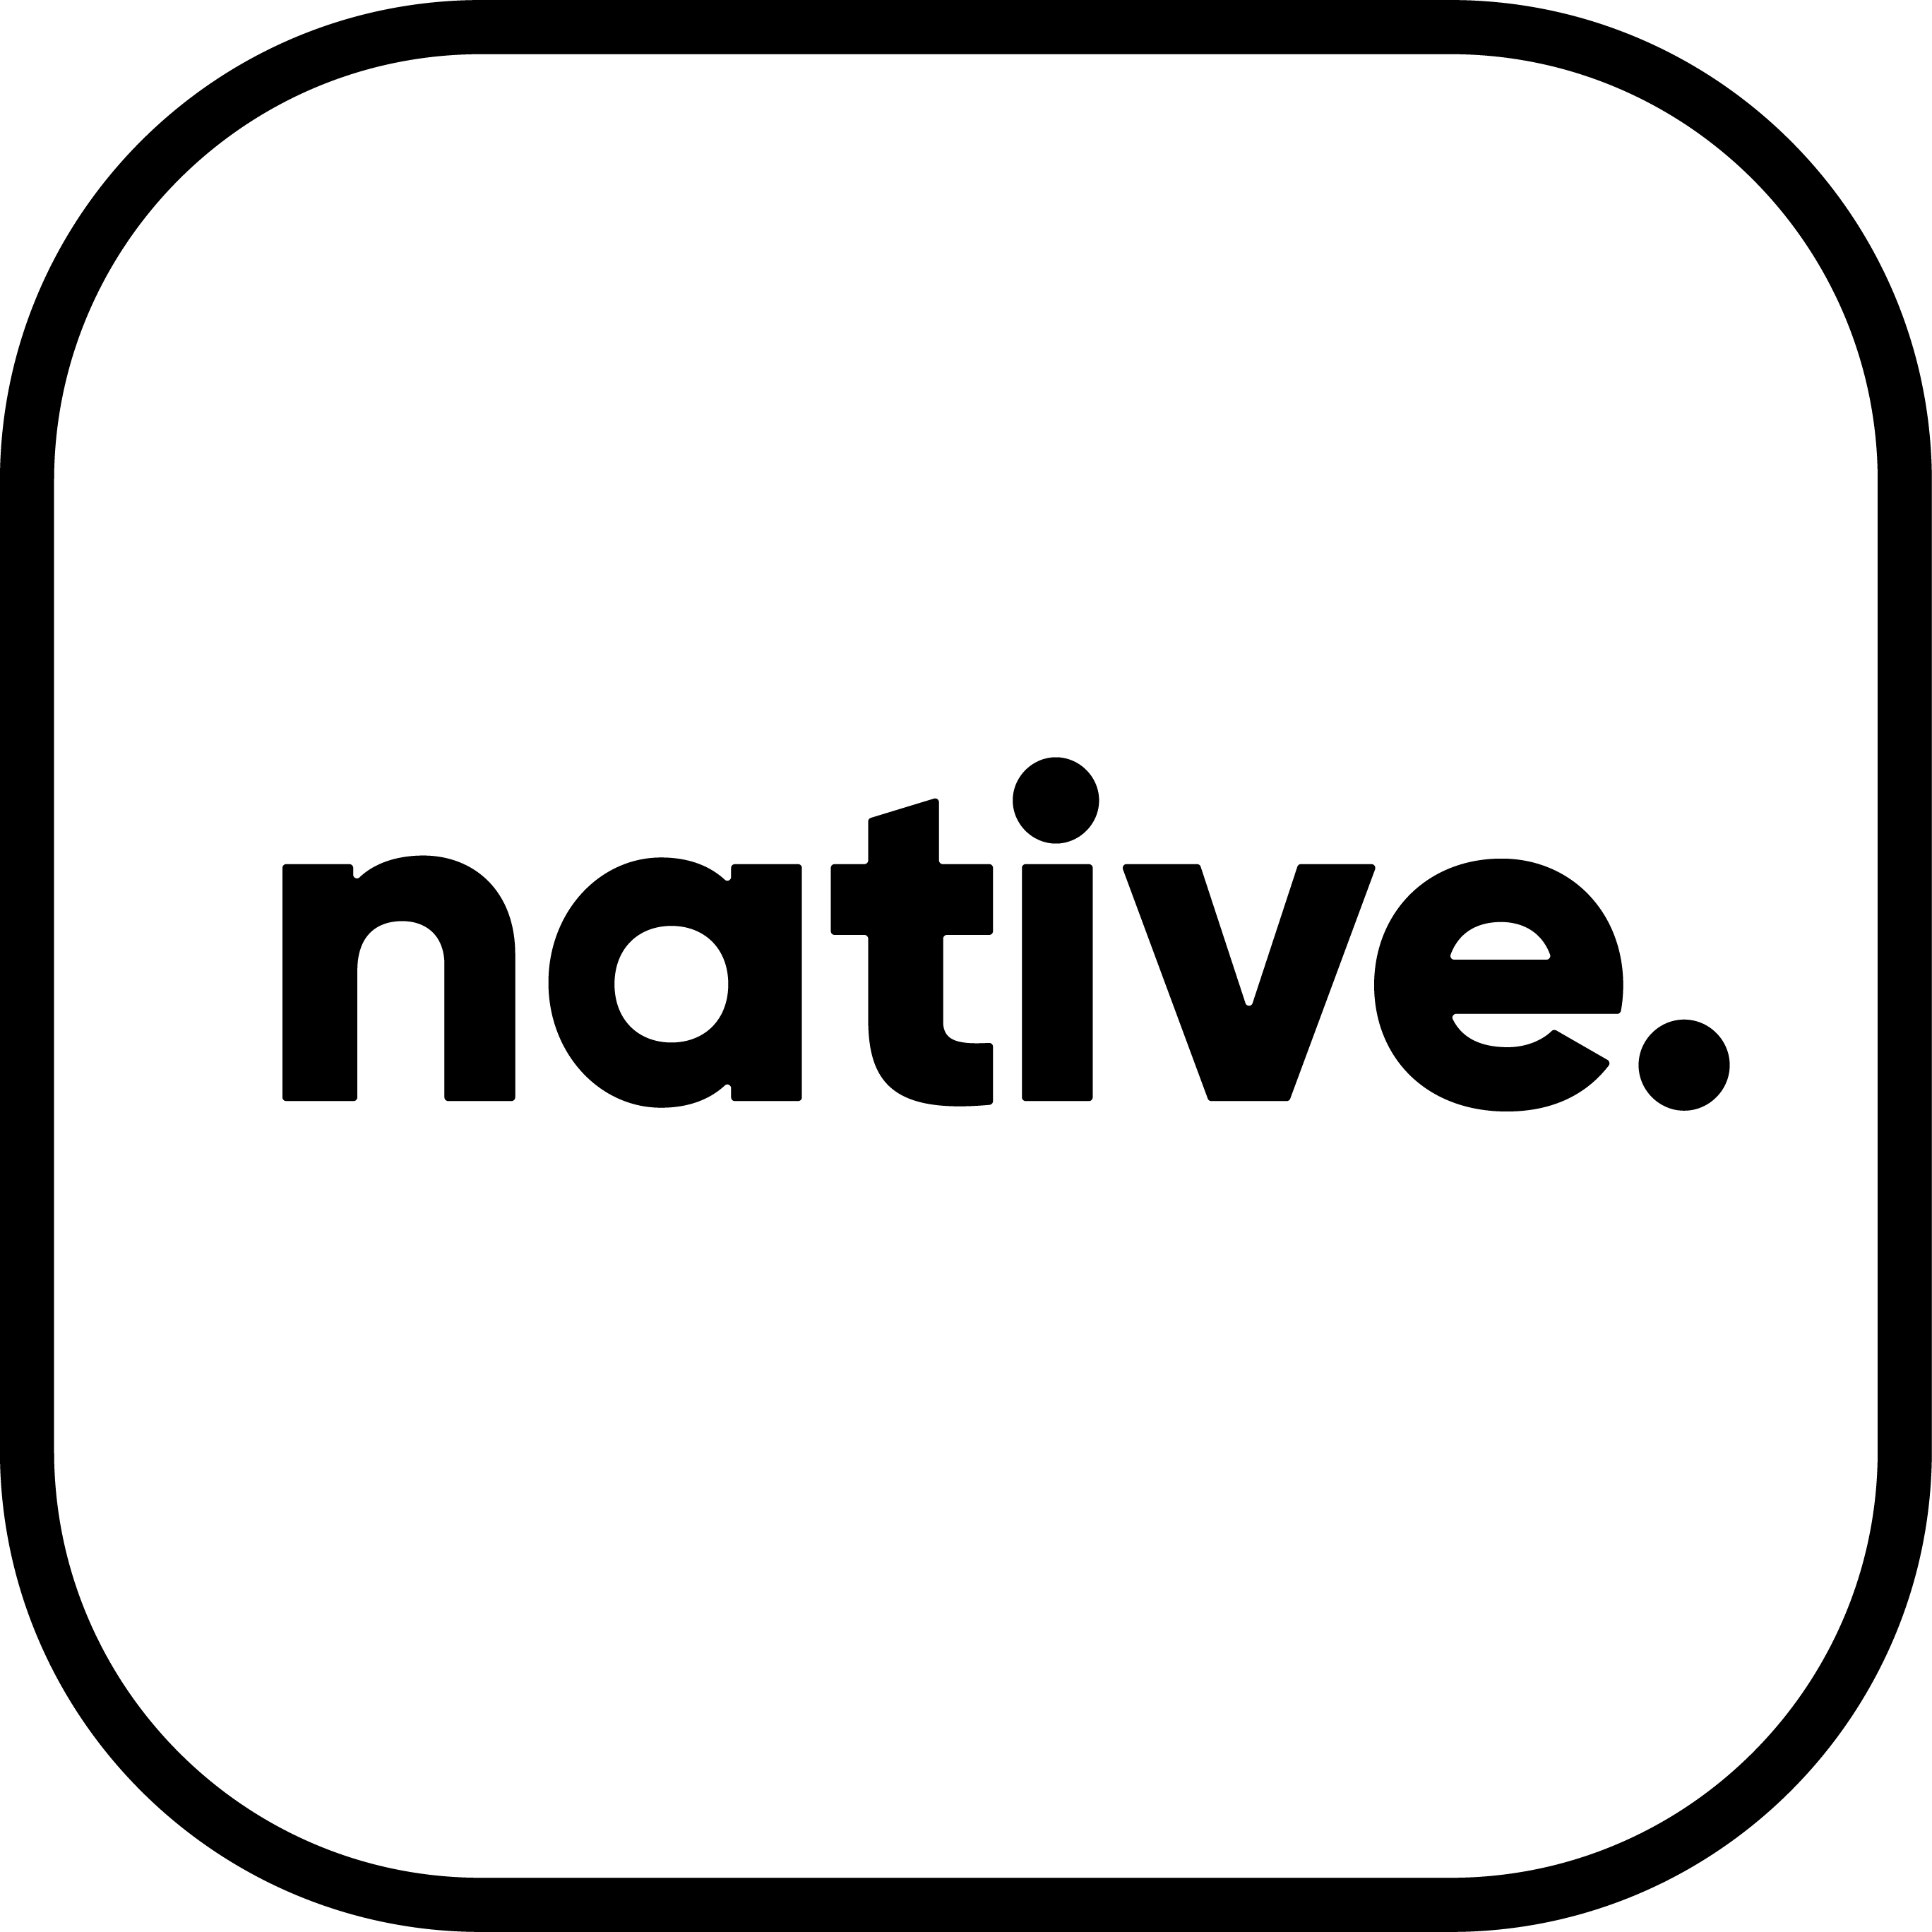 Native logo in black